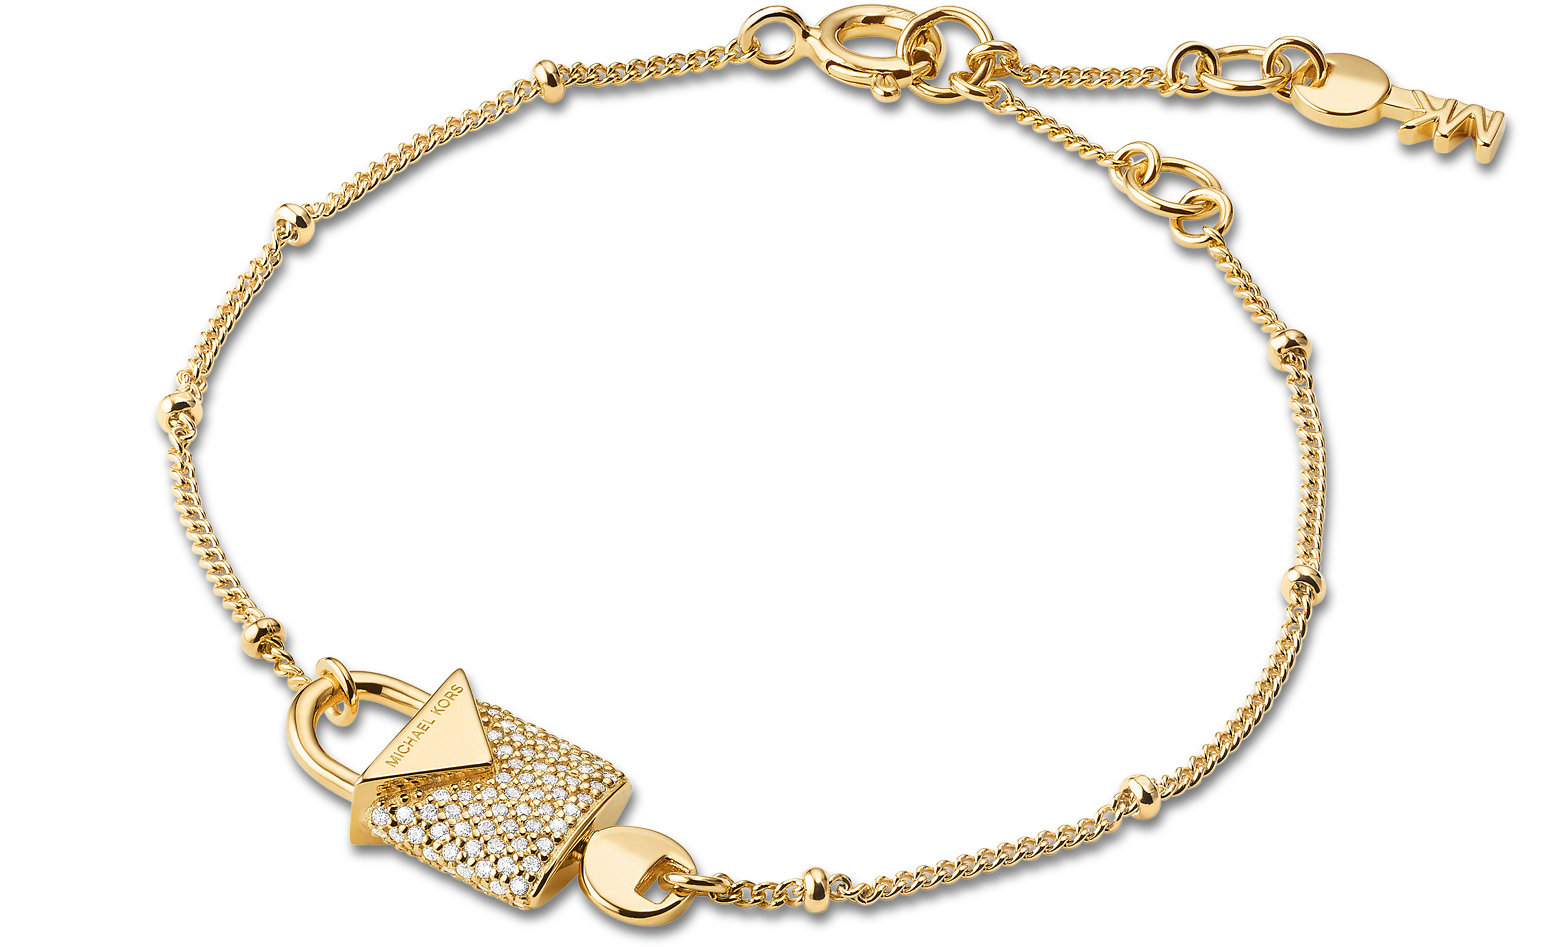 michael kors women's bracelet